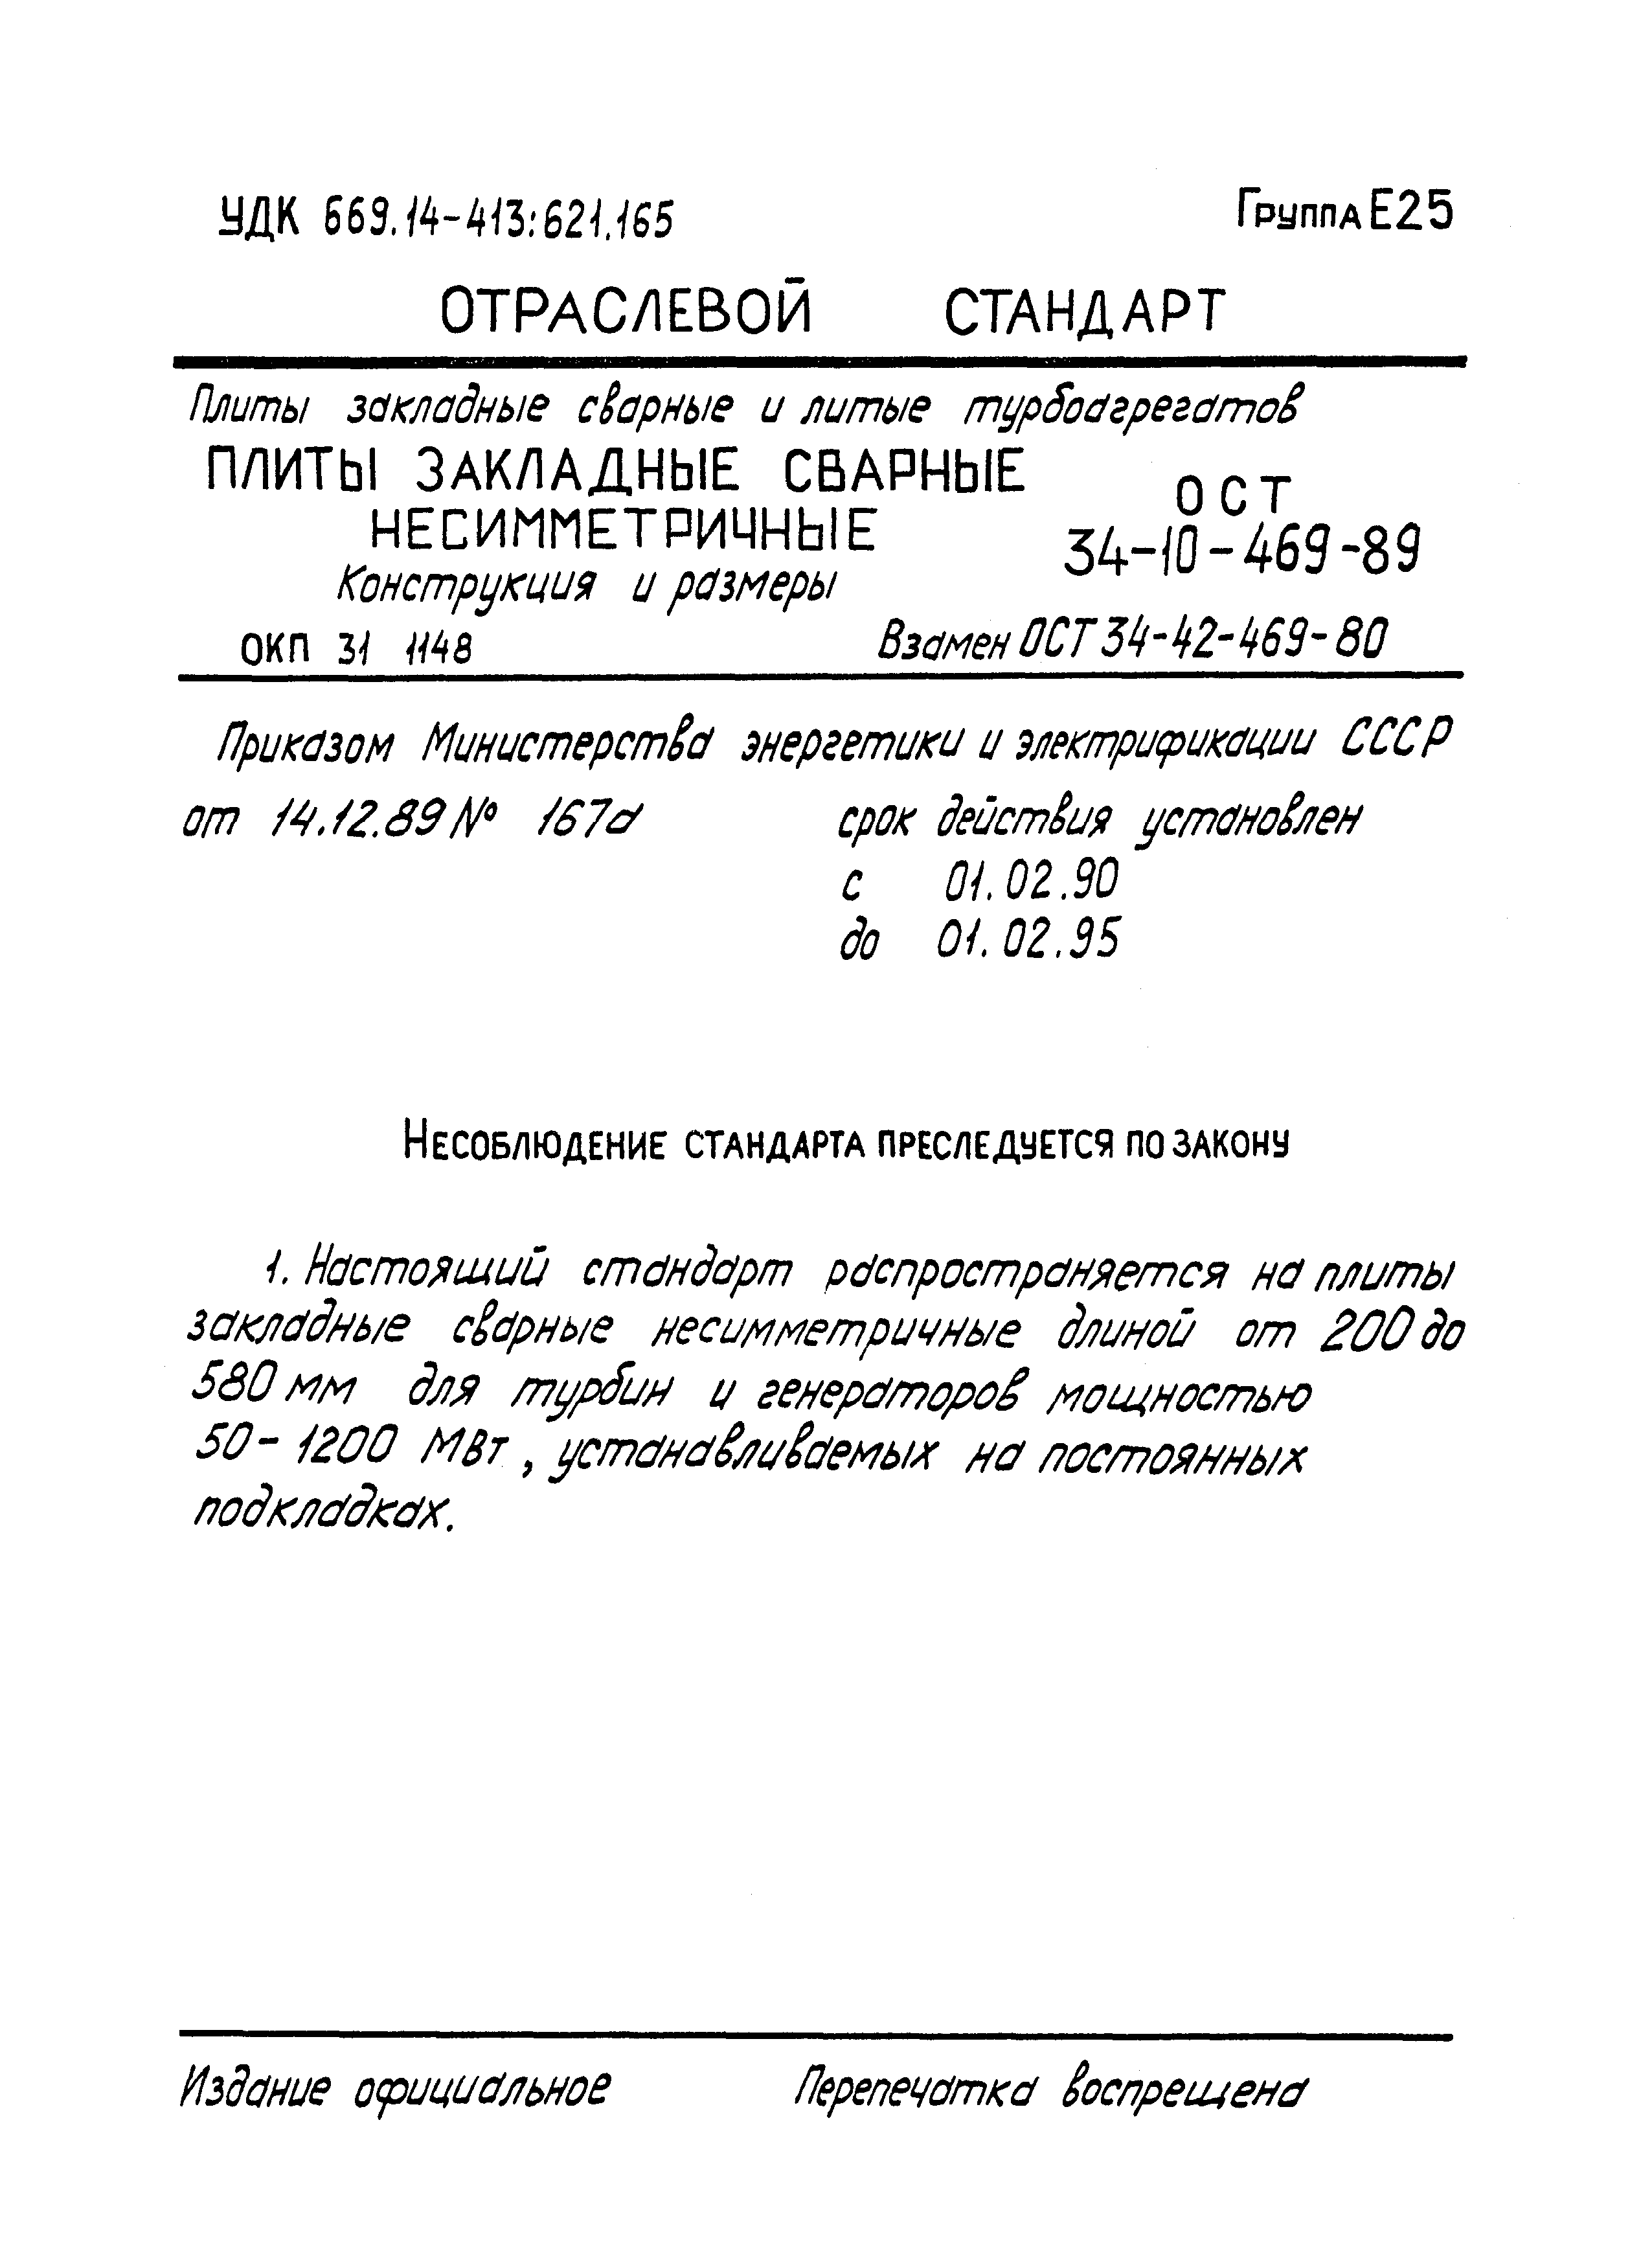 ОСТ 34-10-469-89